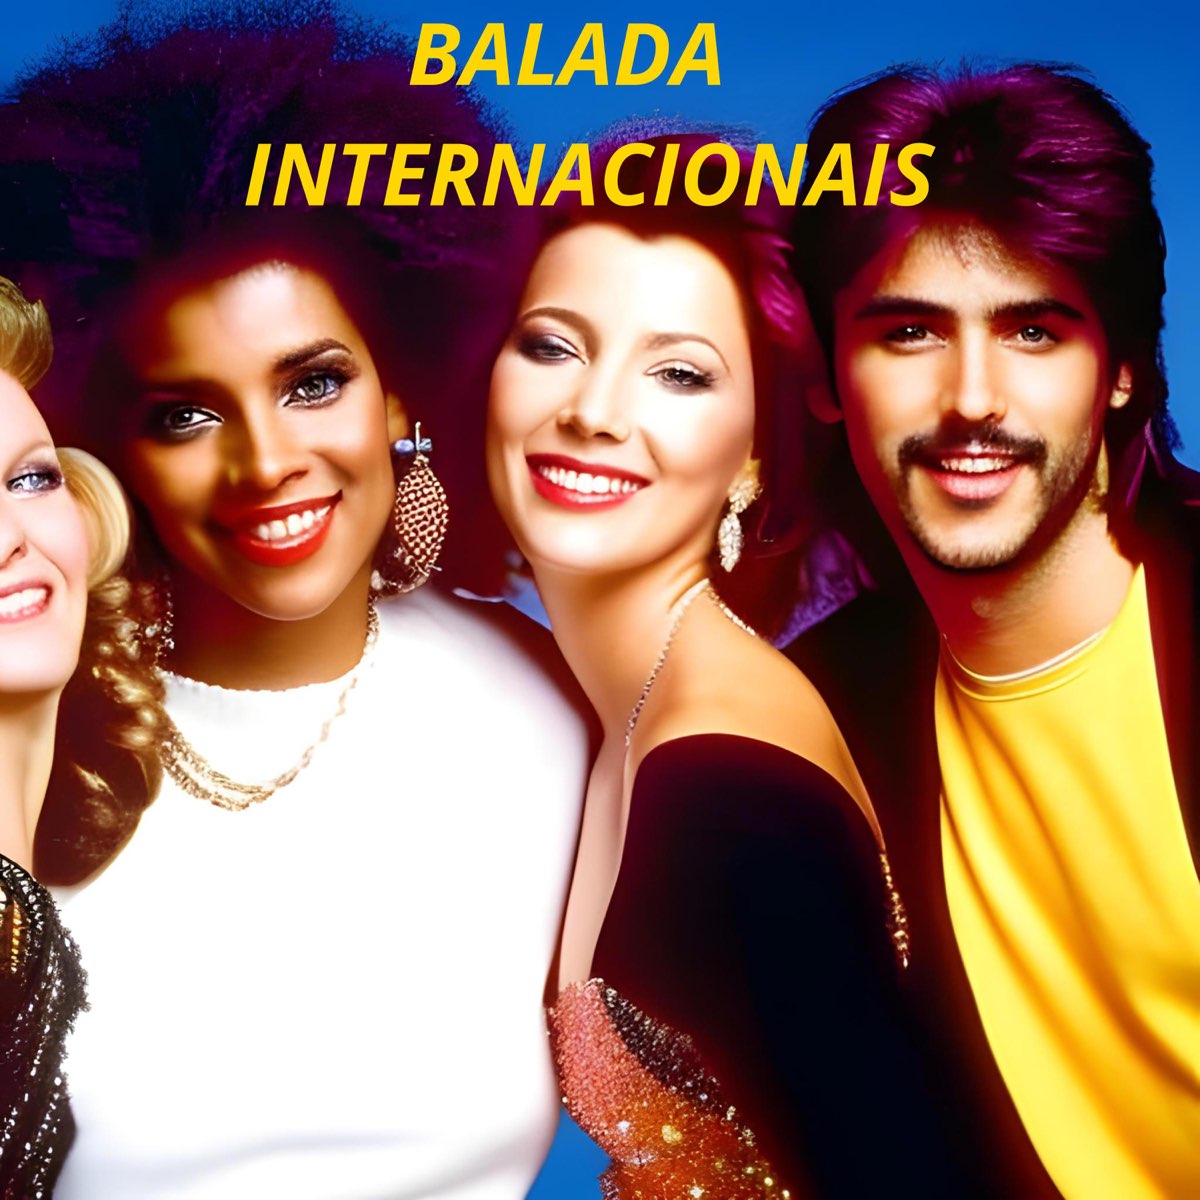 Balada internacional- Anos 90, 2000 e atuais